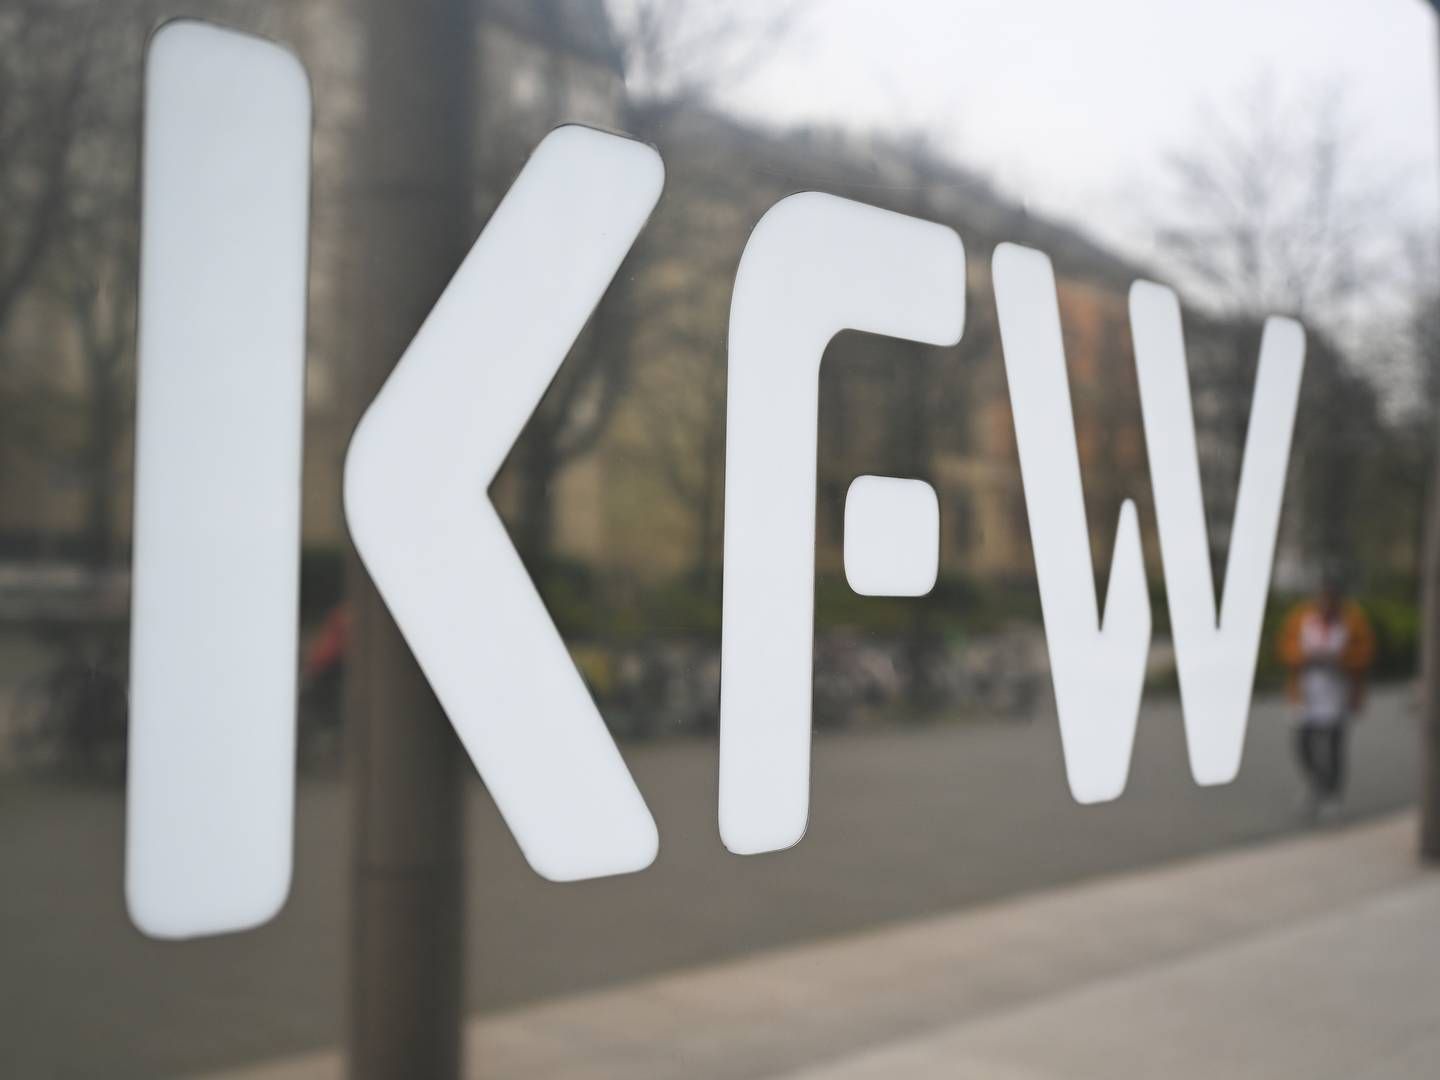 KfW-Schriftzug am Unternehmenssitz | Foto: picture alliance/dpa | Arne Dedert